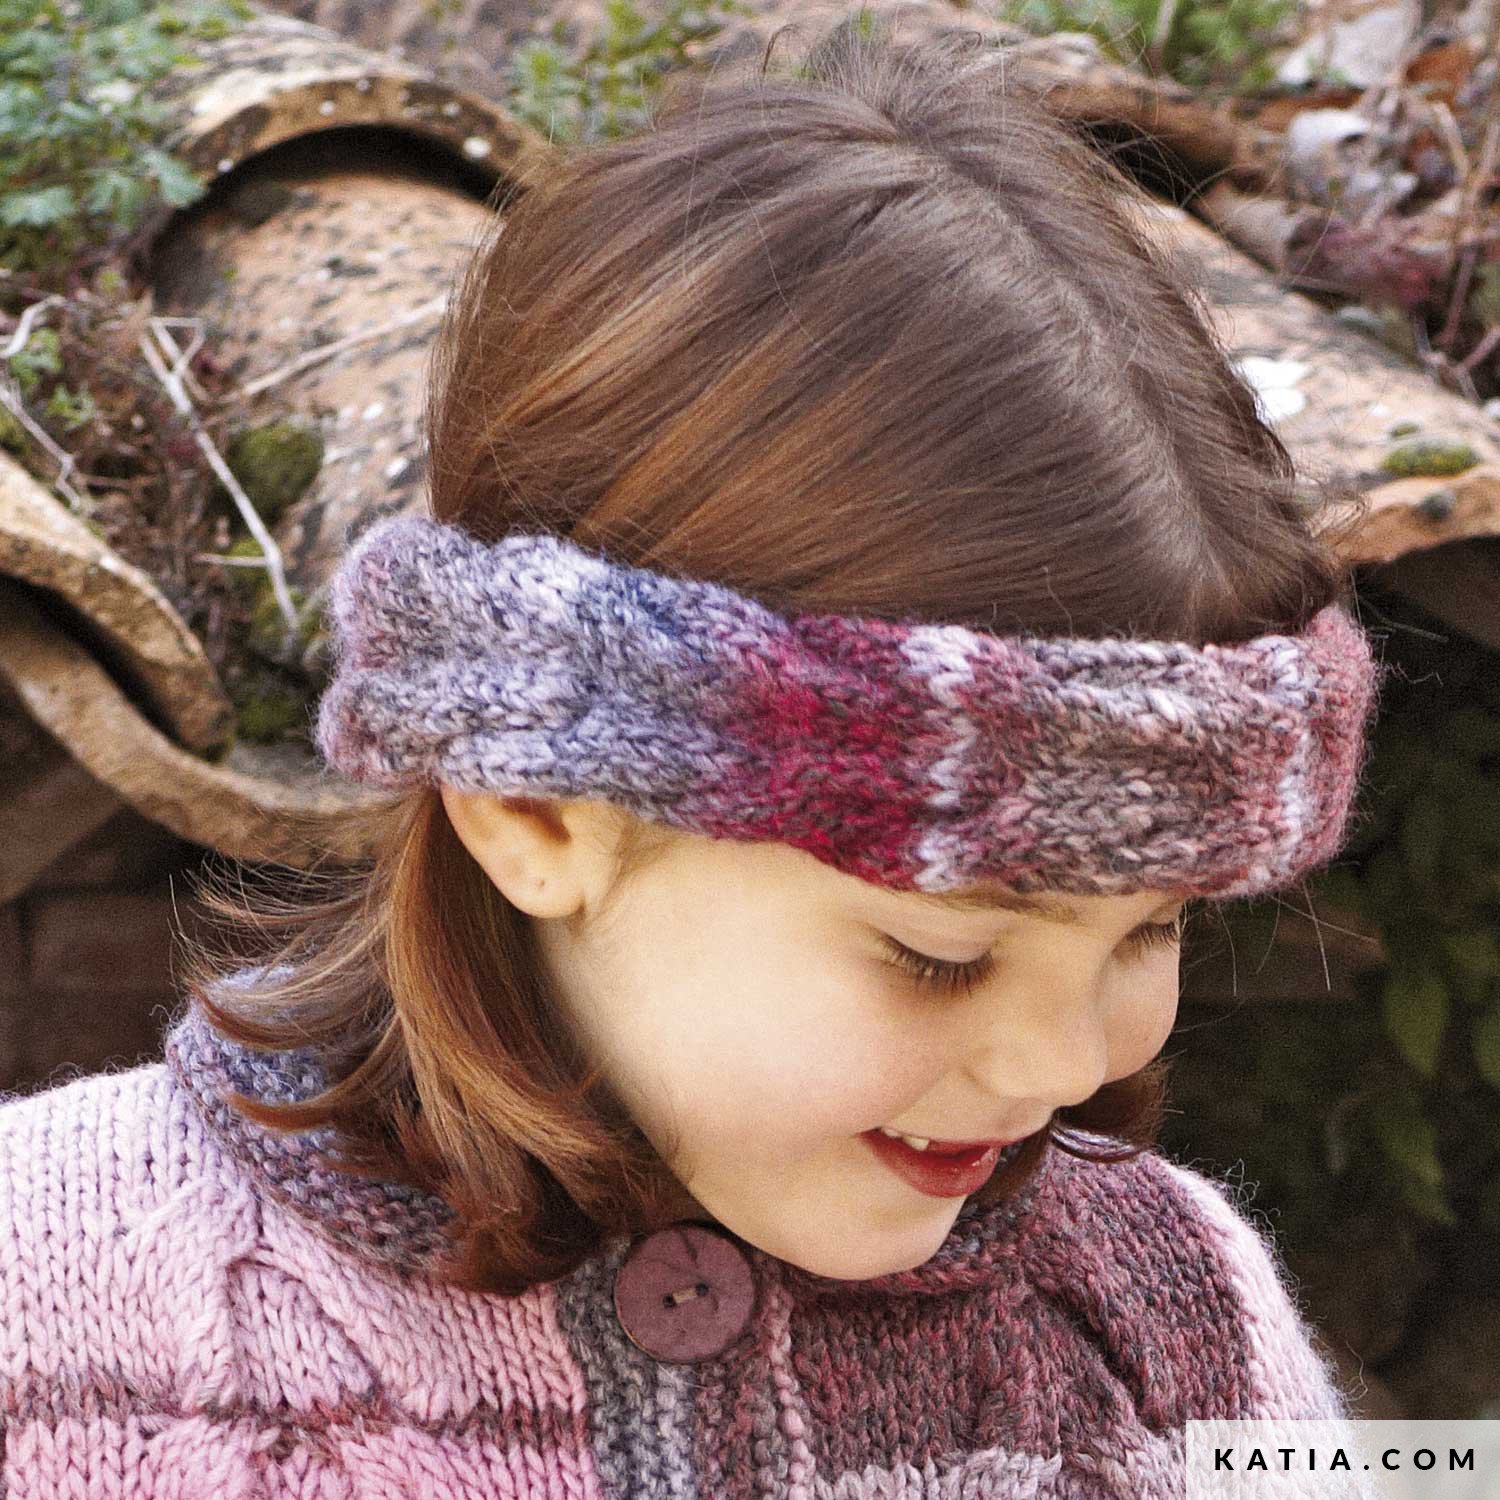 Stirnband Kinder Herbst Winter Modelle Anleit Katia Com